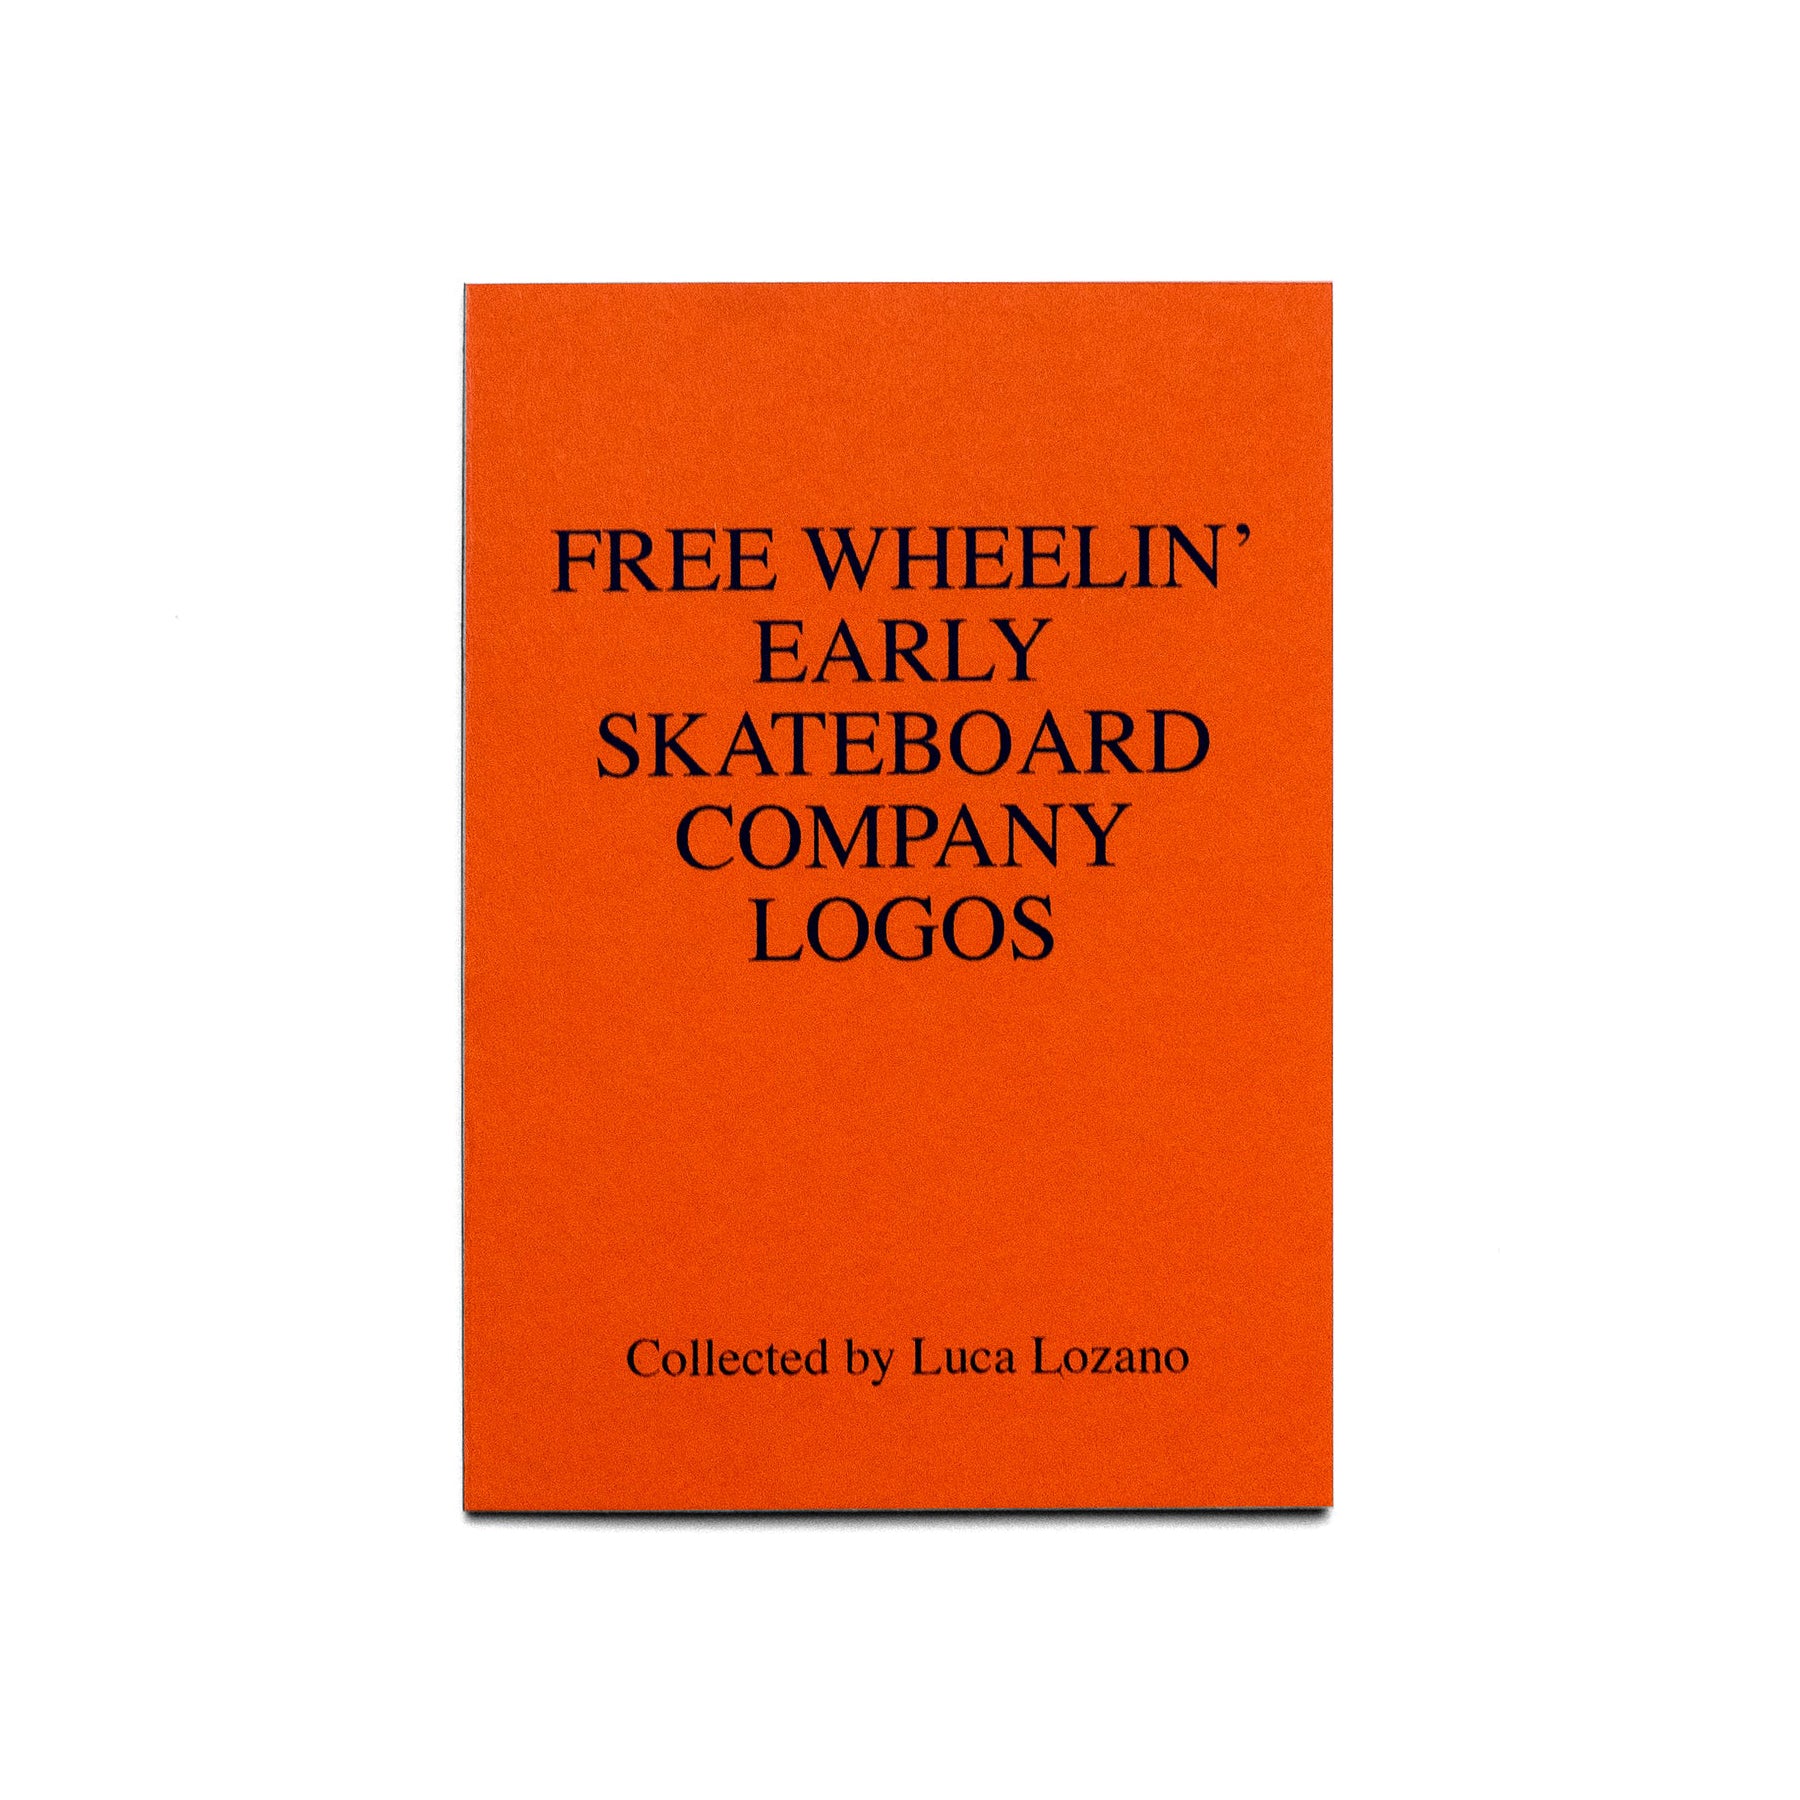 Free Wheelin' Early Skateboard Company Logos